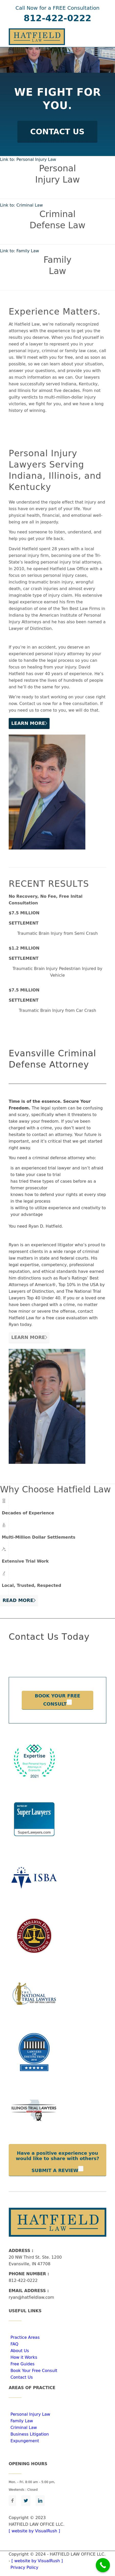 Hatfield Law Office, LLC - Evansville IN Lawyers